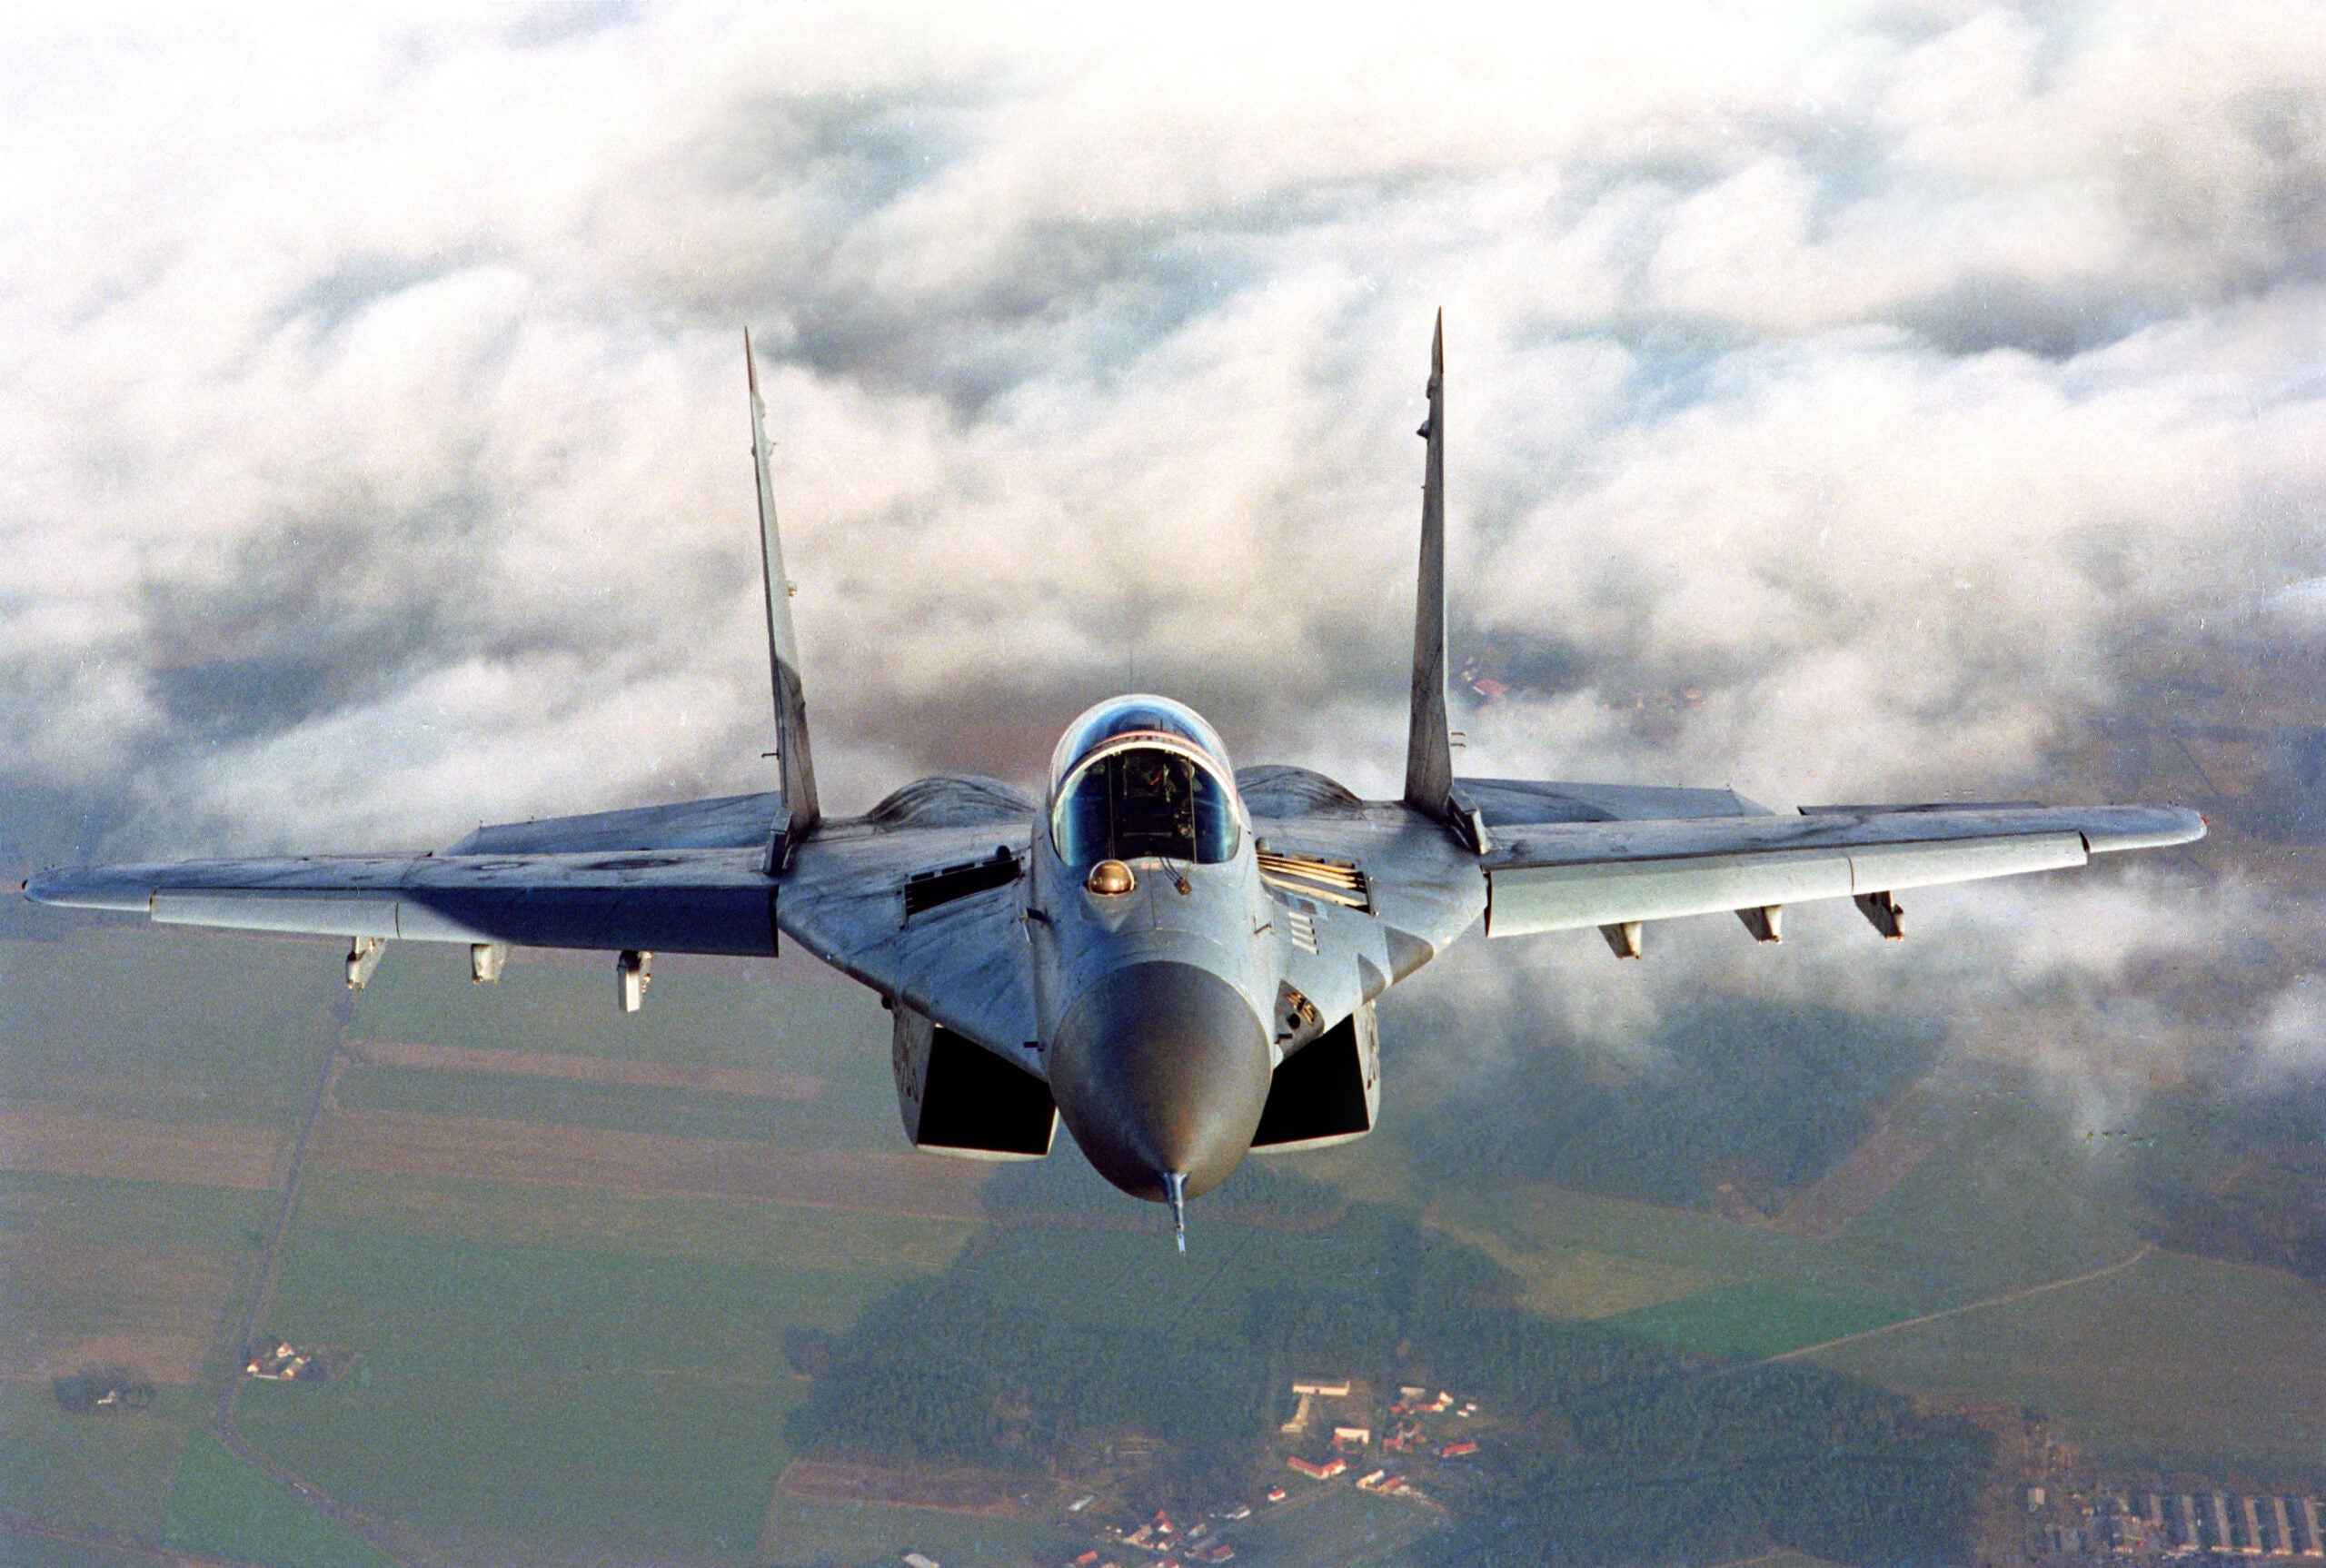 Frontansicht einer Mikojan ( Mig 29)  im Flug. 
Mikojan (Mig 29) im Tiefflug. Das in der Sowjetunion entwickelte und gefertigte Flugzeug wurde ab 1988 an die Landstreitkräfte der ehemaligen DDR geliefert. Die Luftwaffe übernahm 1990 zwanzig Einsitzer und vier Zweisitzer der ehemaligen NVA. Leicht modifiziert (Navigationsanlage, Gps.IFF-System) wurde sie auch im NATO Luftraum eingesetzt. Die Mig 29 wurde 2003 an die Polnischen Streitkräfte übergeben. 1492790